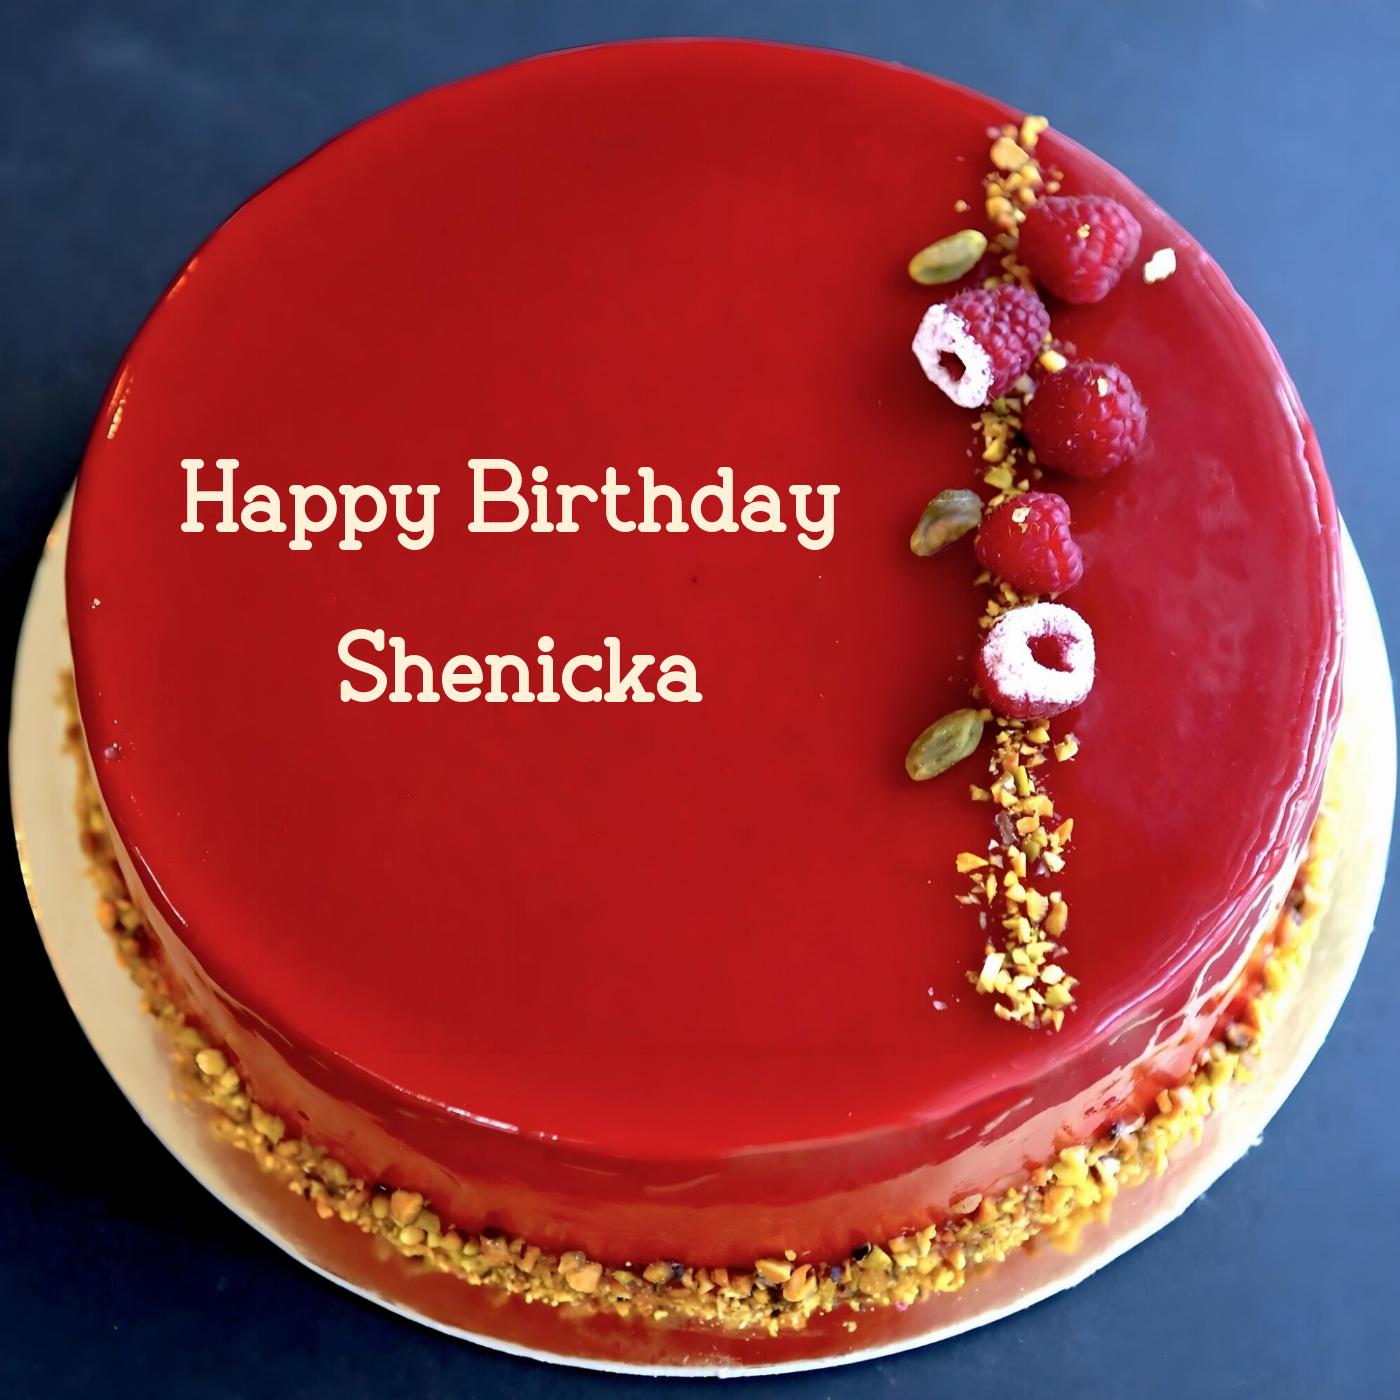 Happy Birthday Shenicka Red Raspberry Cake